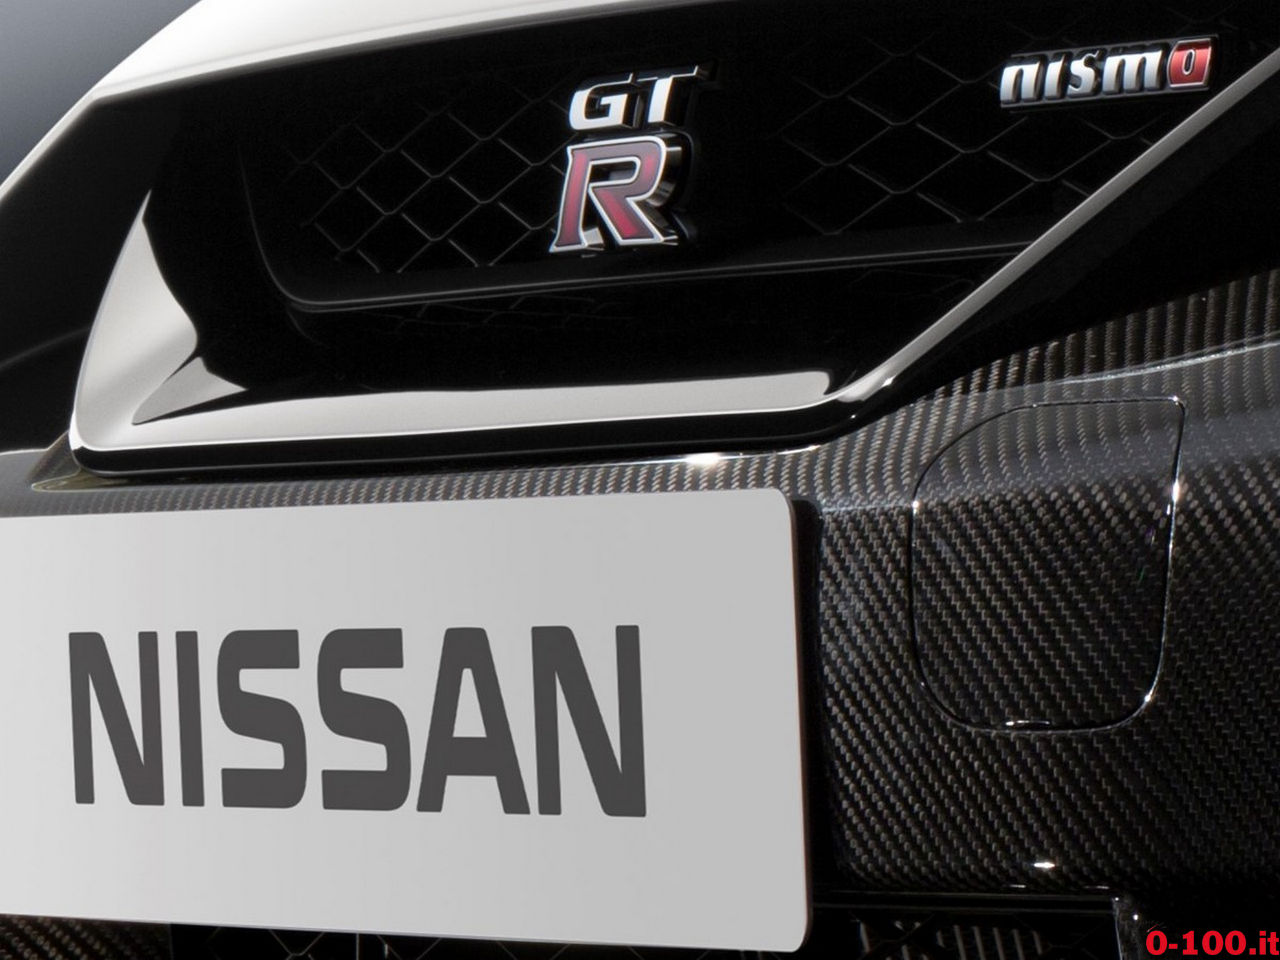 nissan_GT-R-nismo-model-year-2017_0-100_14